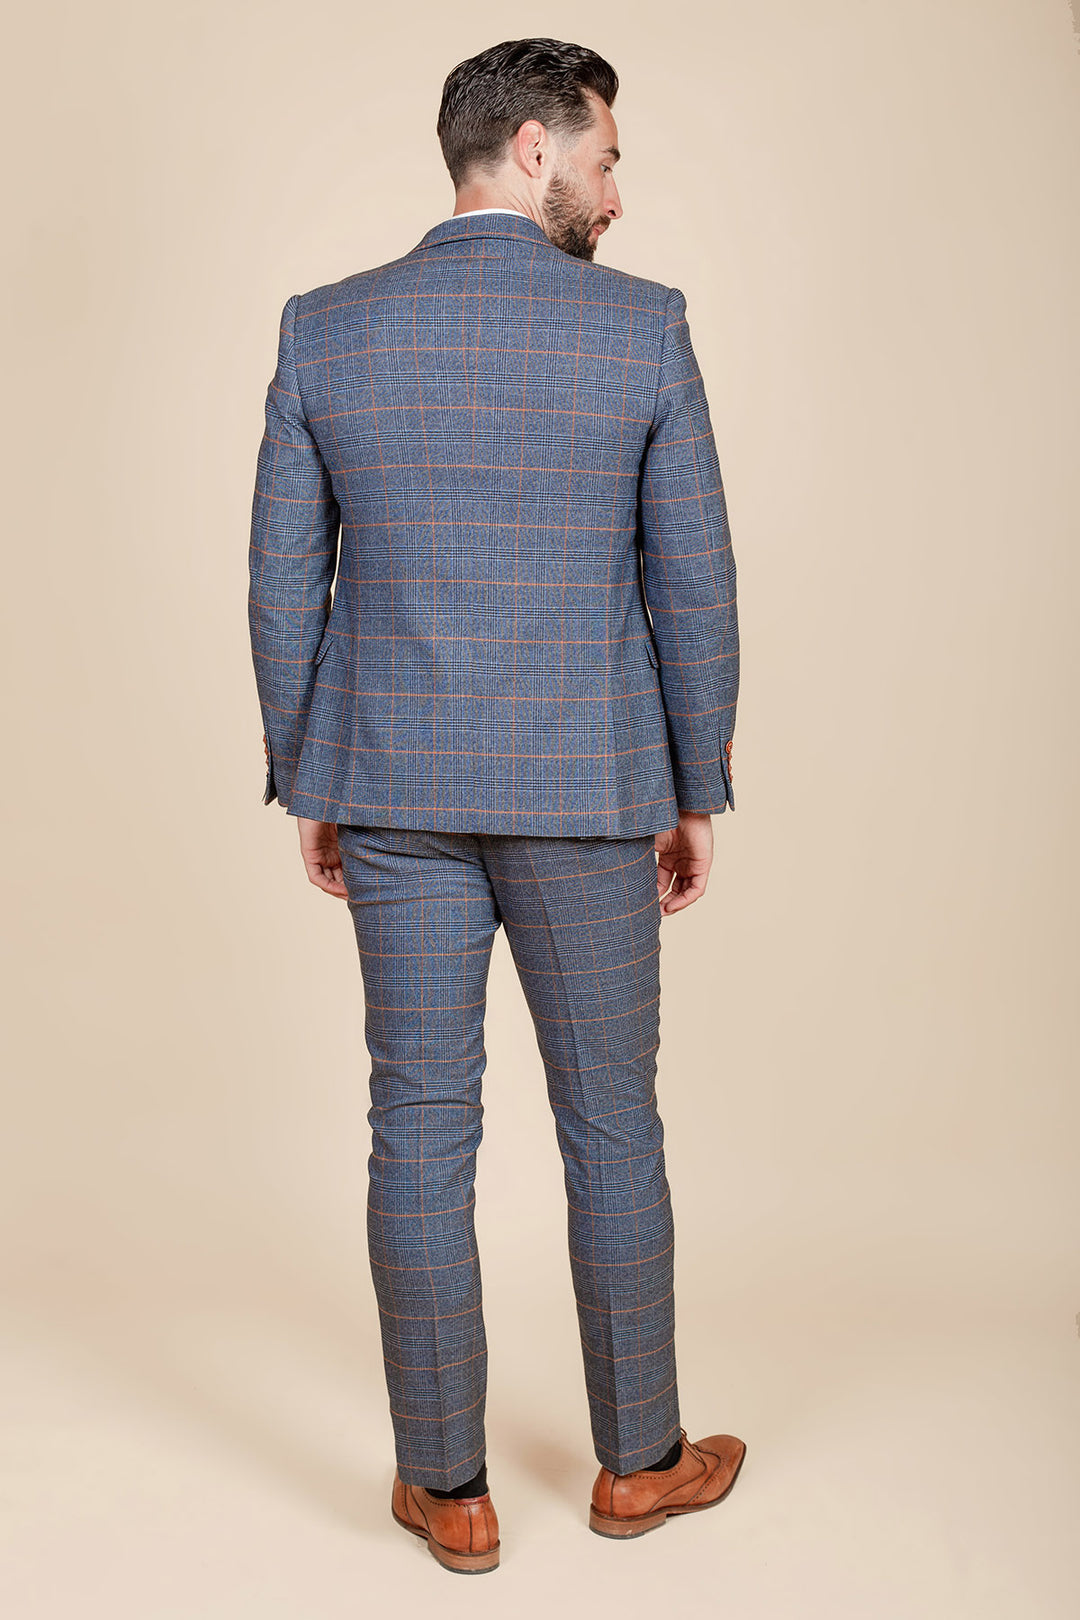 JENSON - Sky Blue Check Two Piece Suit